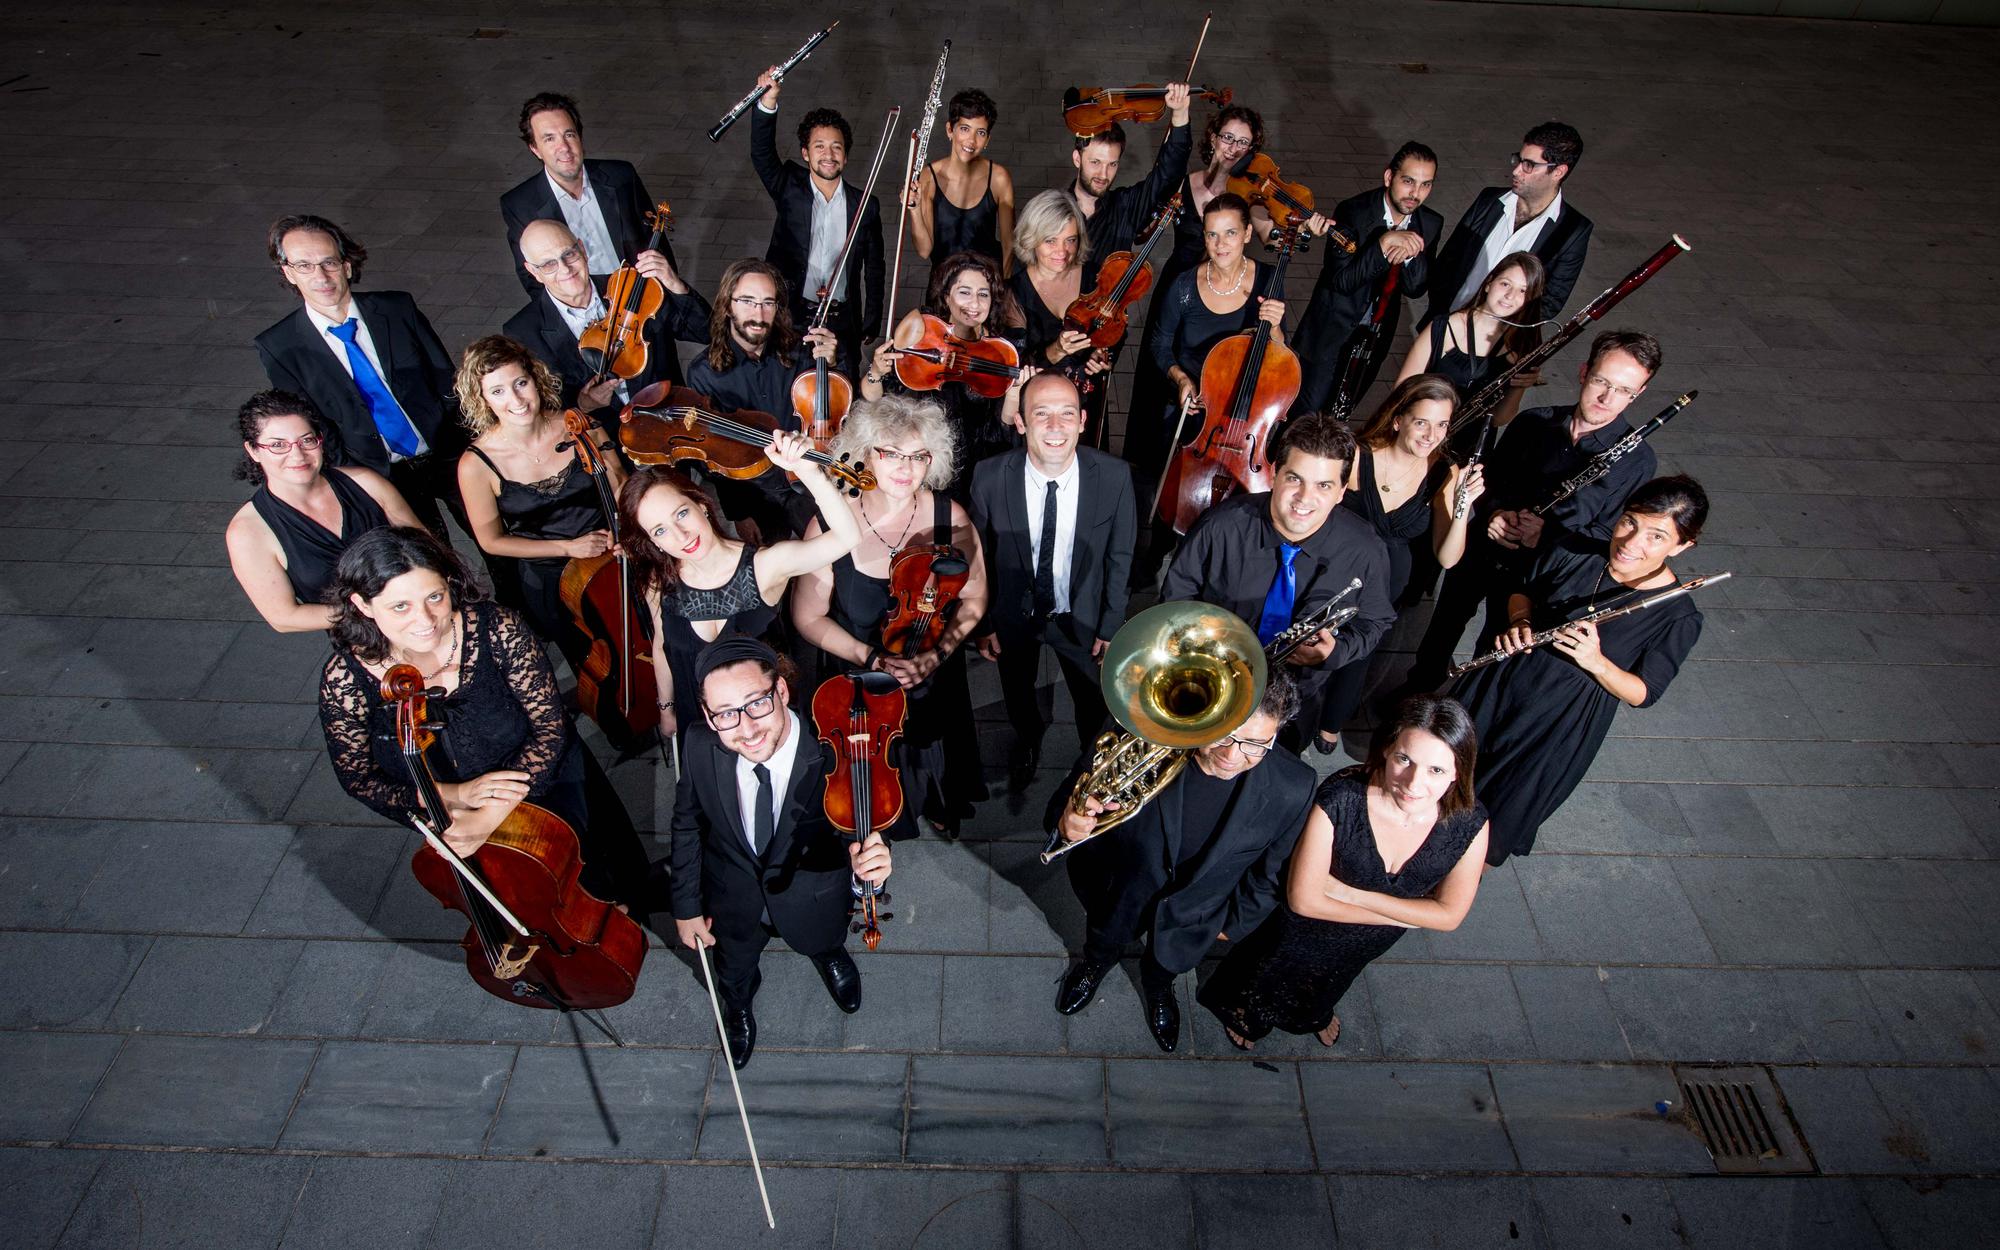 התזמורת הקאמרית הישראלית מציגה קונצרט מיוחד במינו המורכב כולו מבחירת הקהל